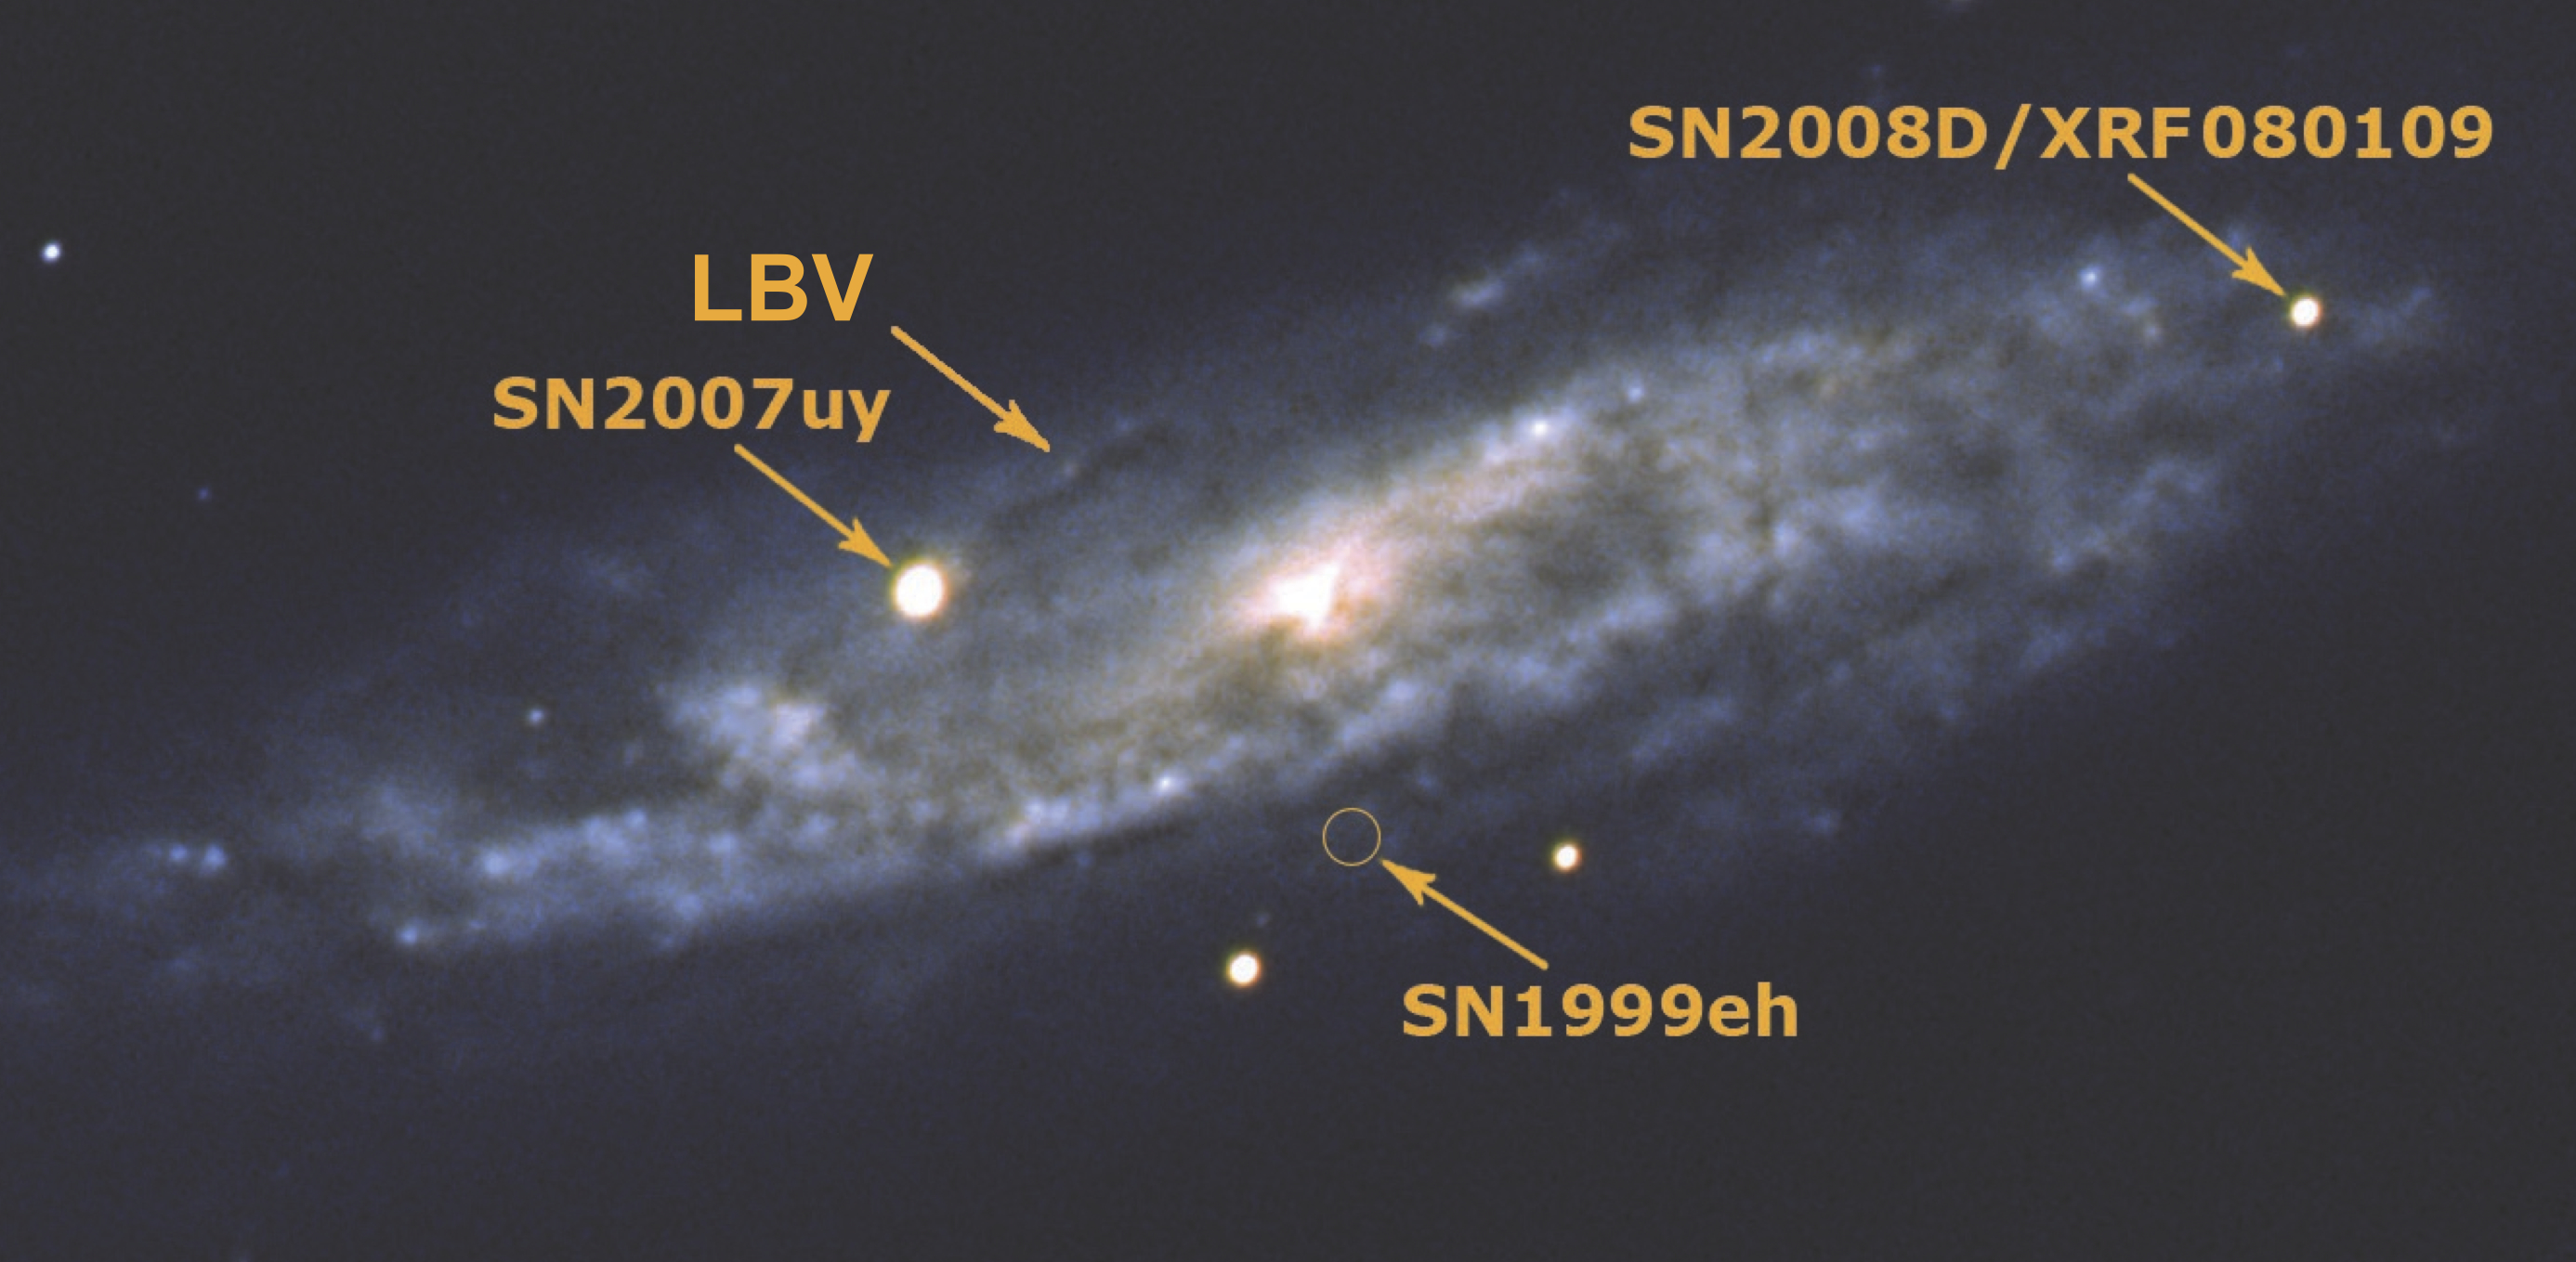 NGC2770